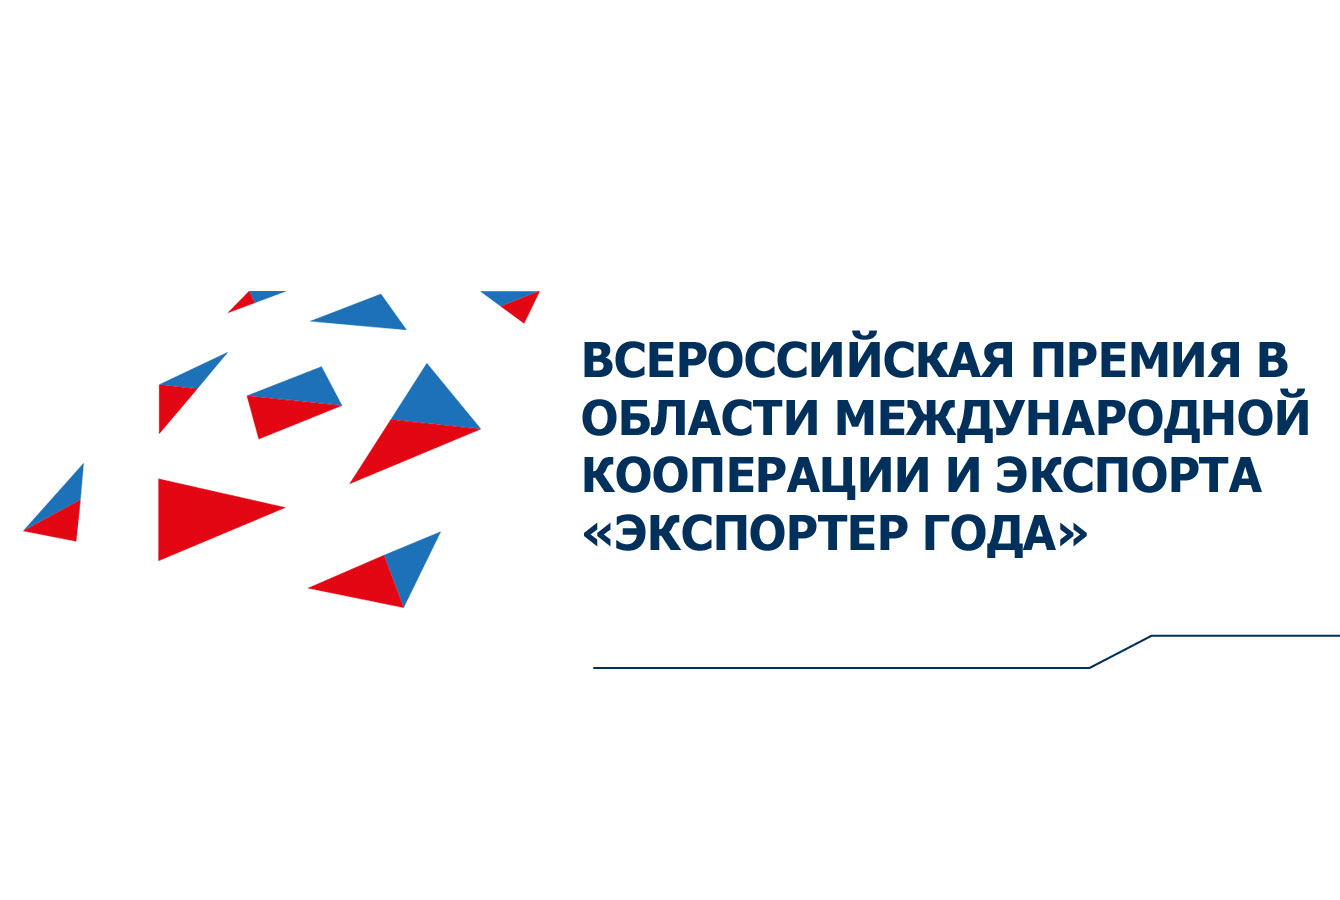 АО "Российский экспортный центр" принимает заявки на участие во Всероссийском конкурсе "Экспортер года"